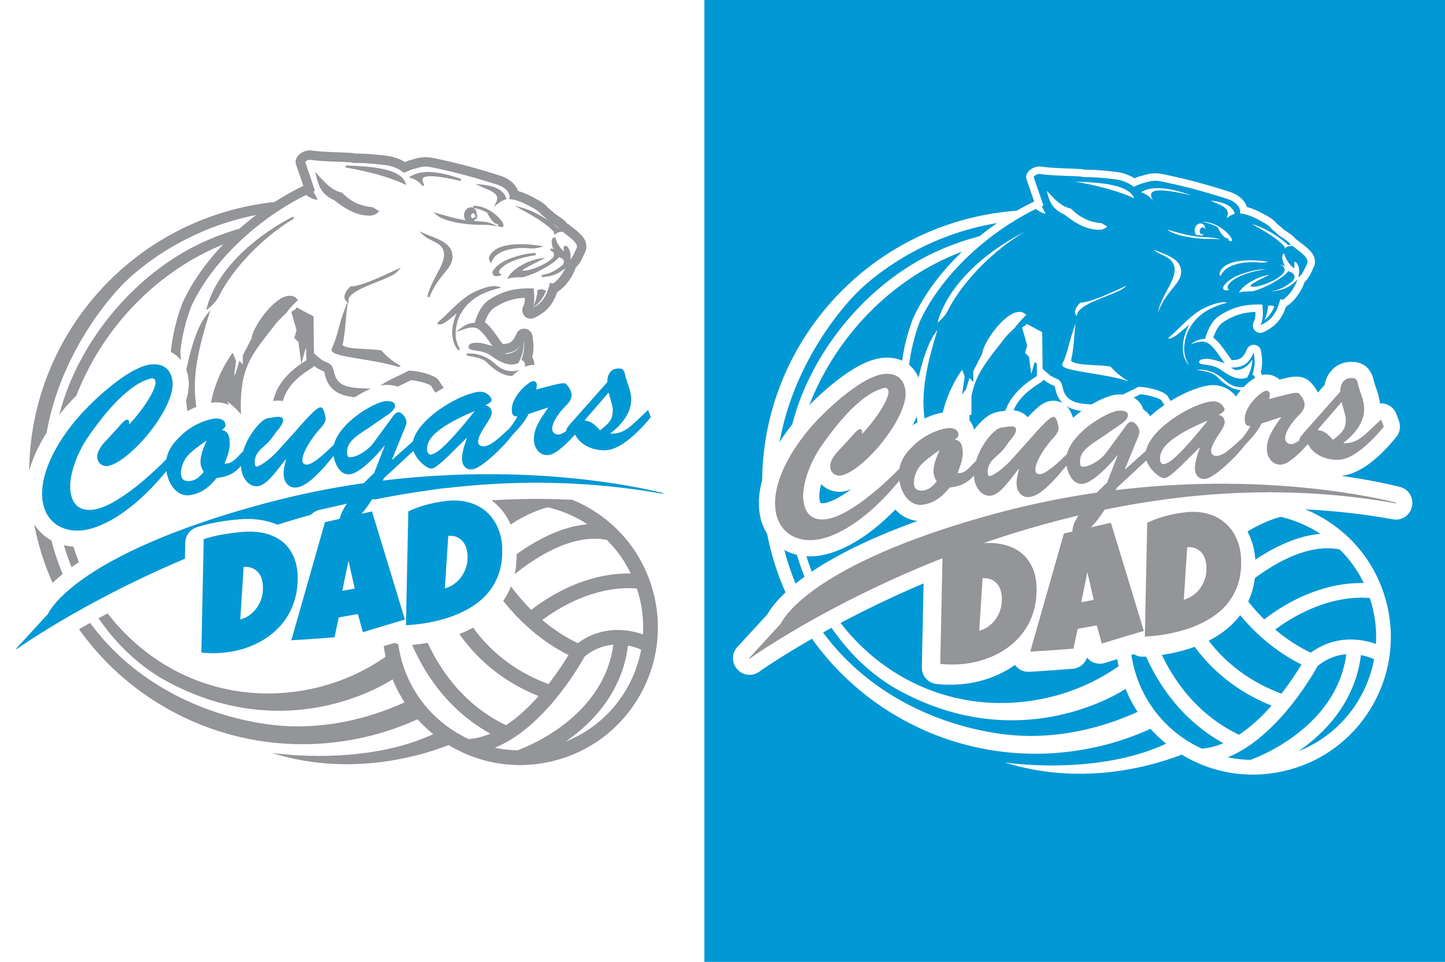 Cougars Dad Apparel